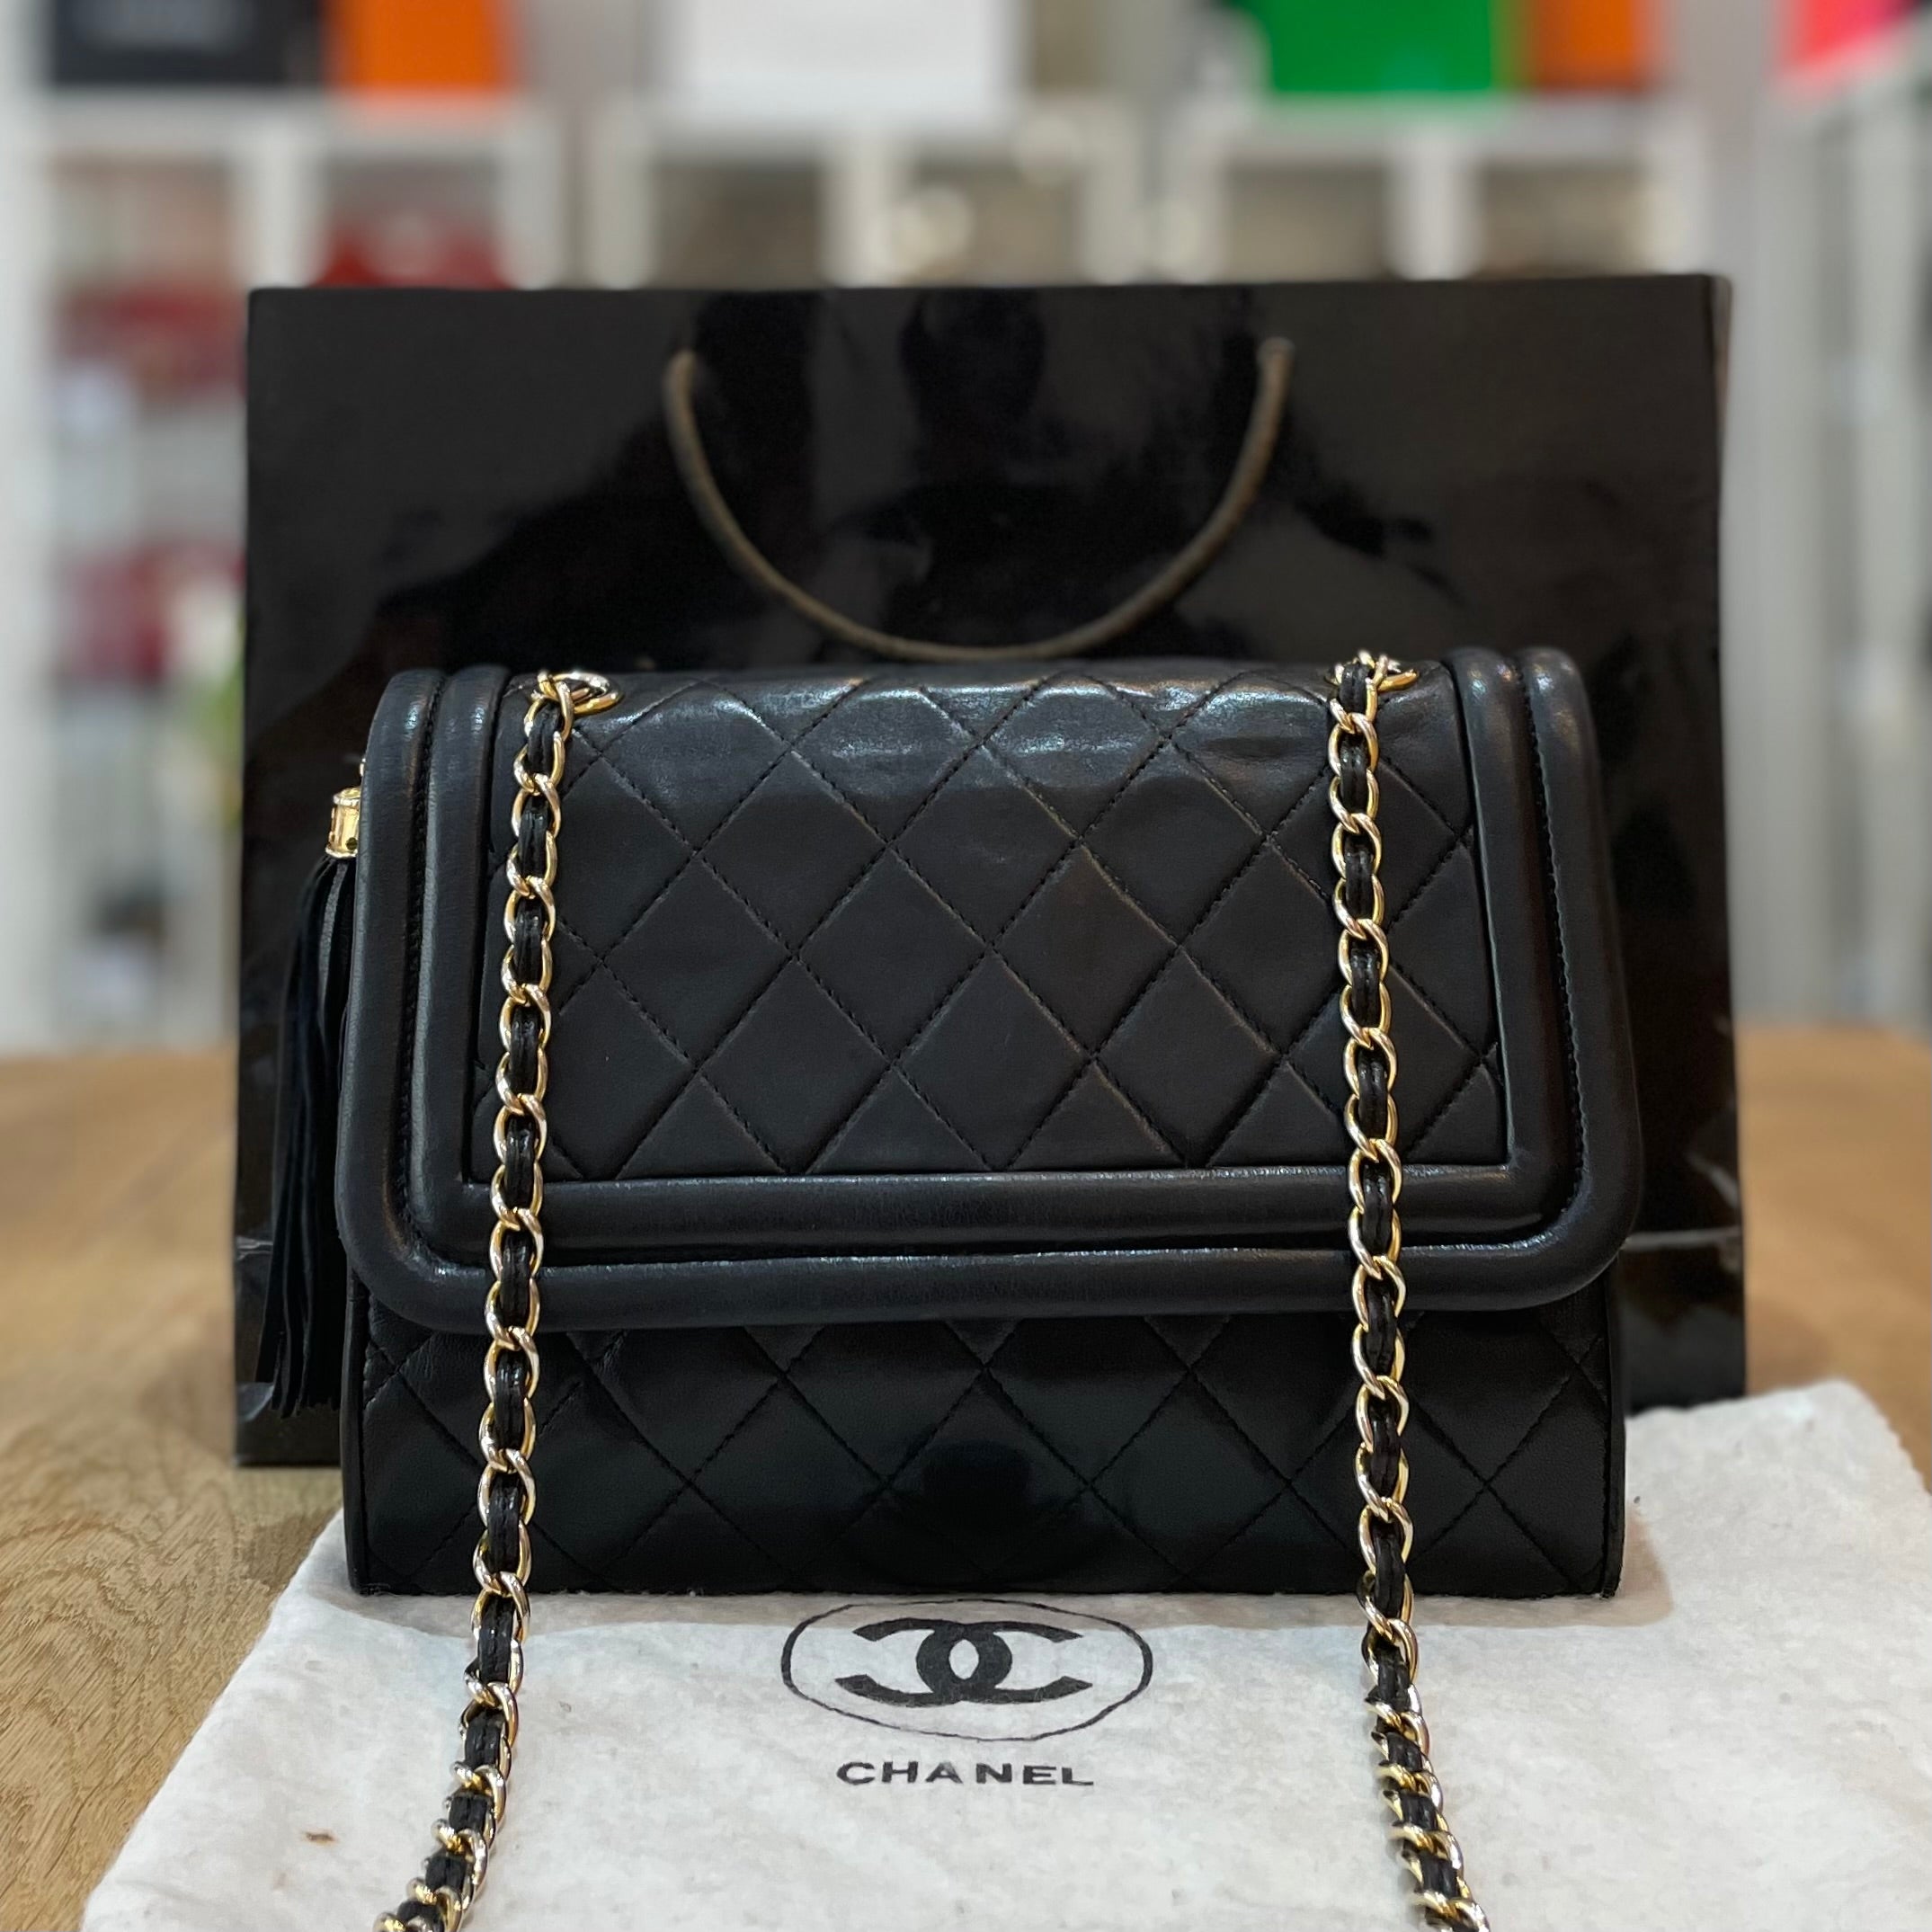 Chanel East West Handbag - 21 For Sale on 1stDibs